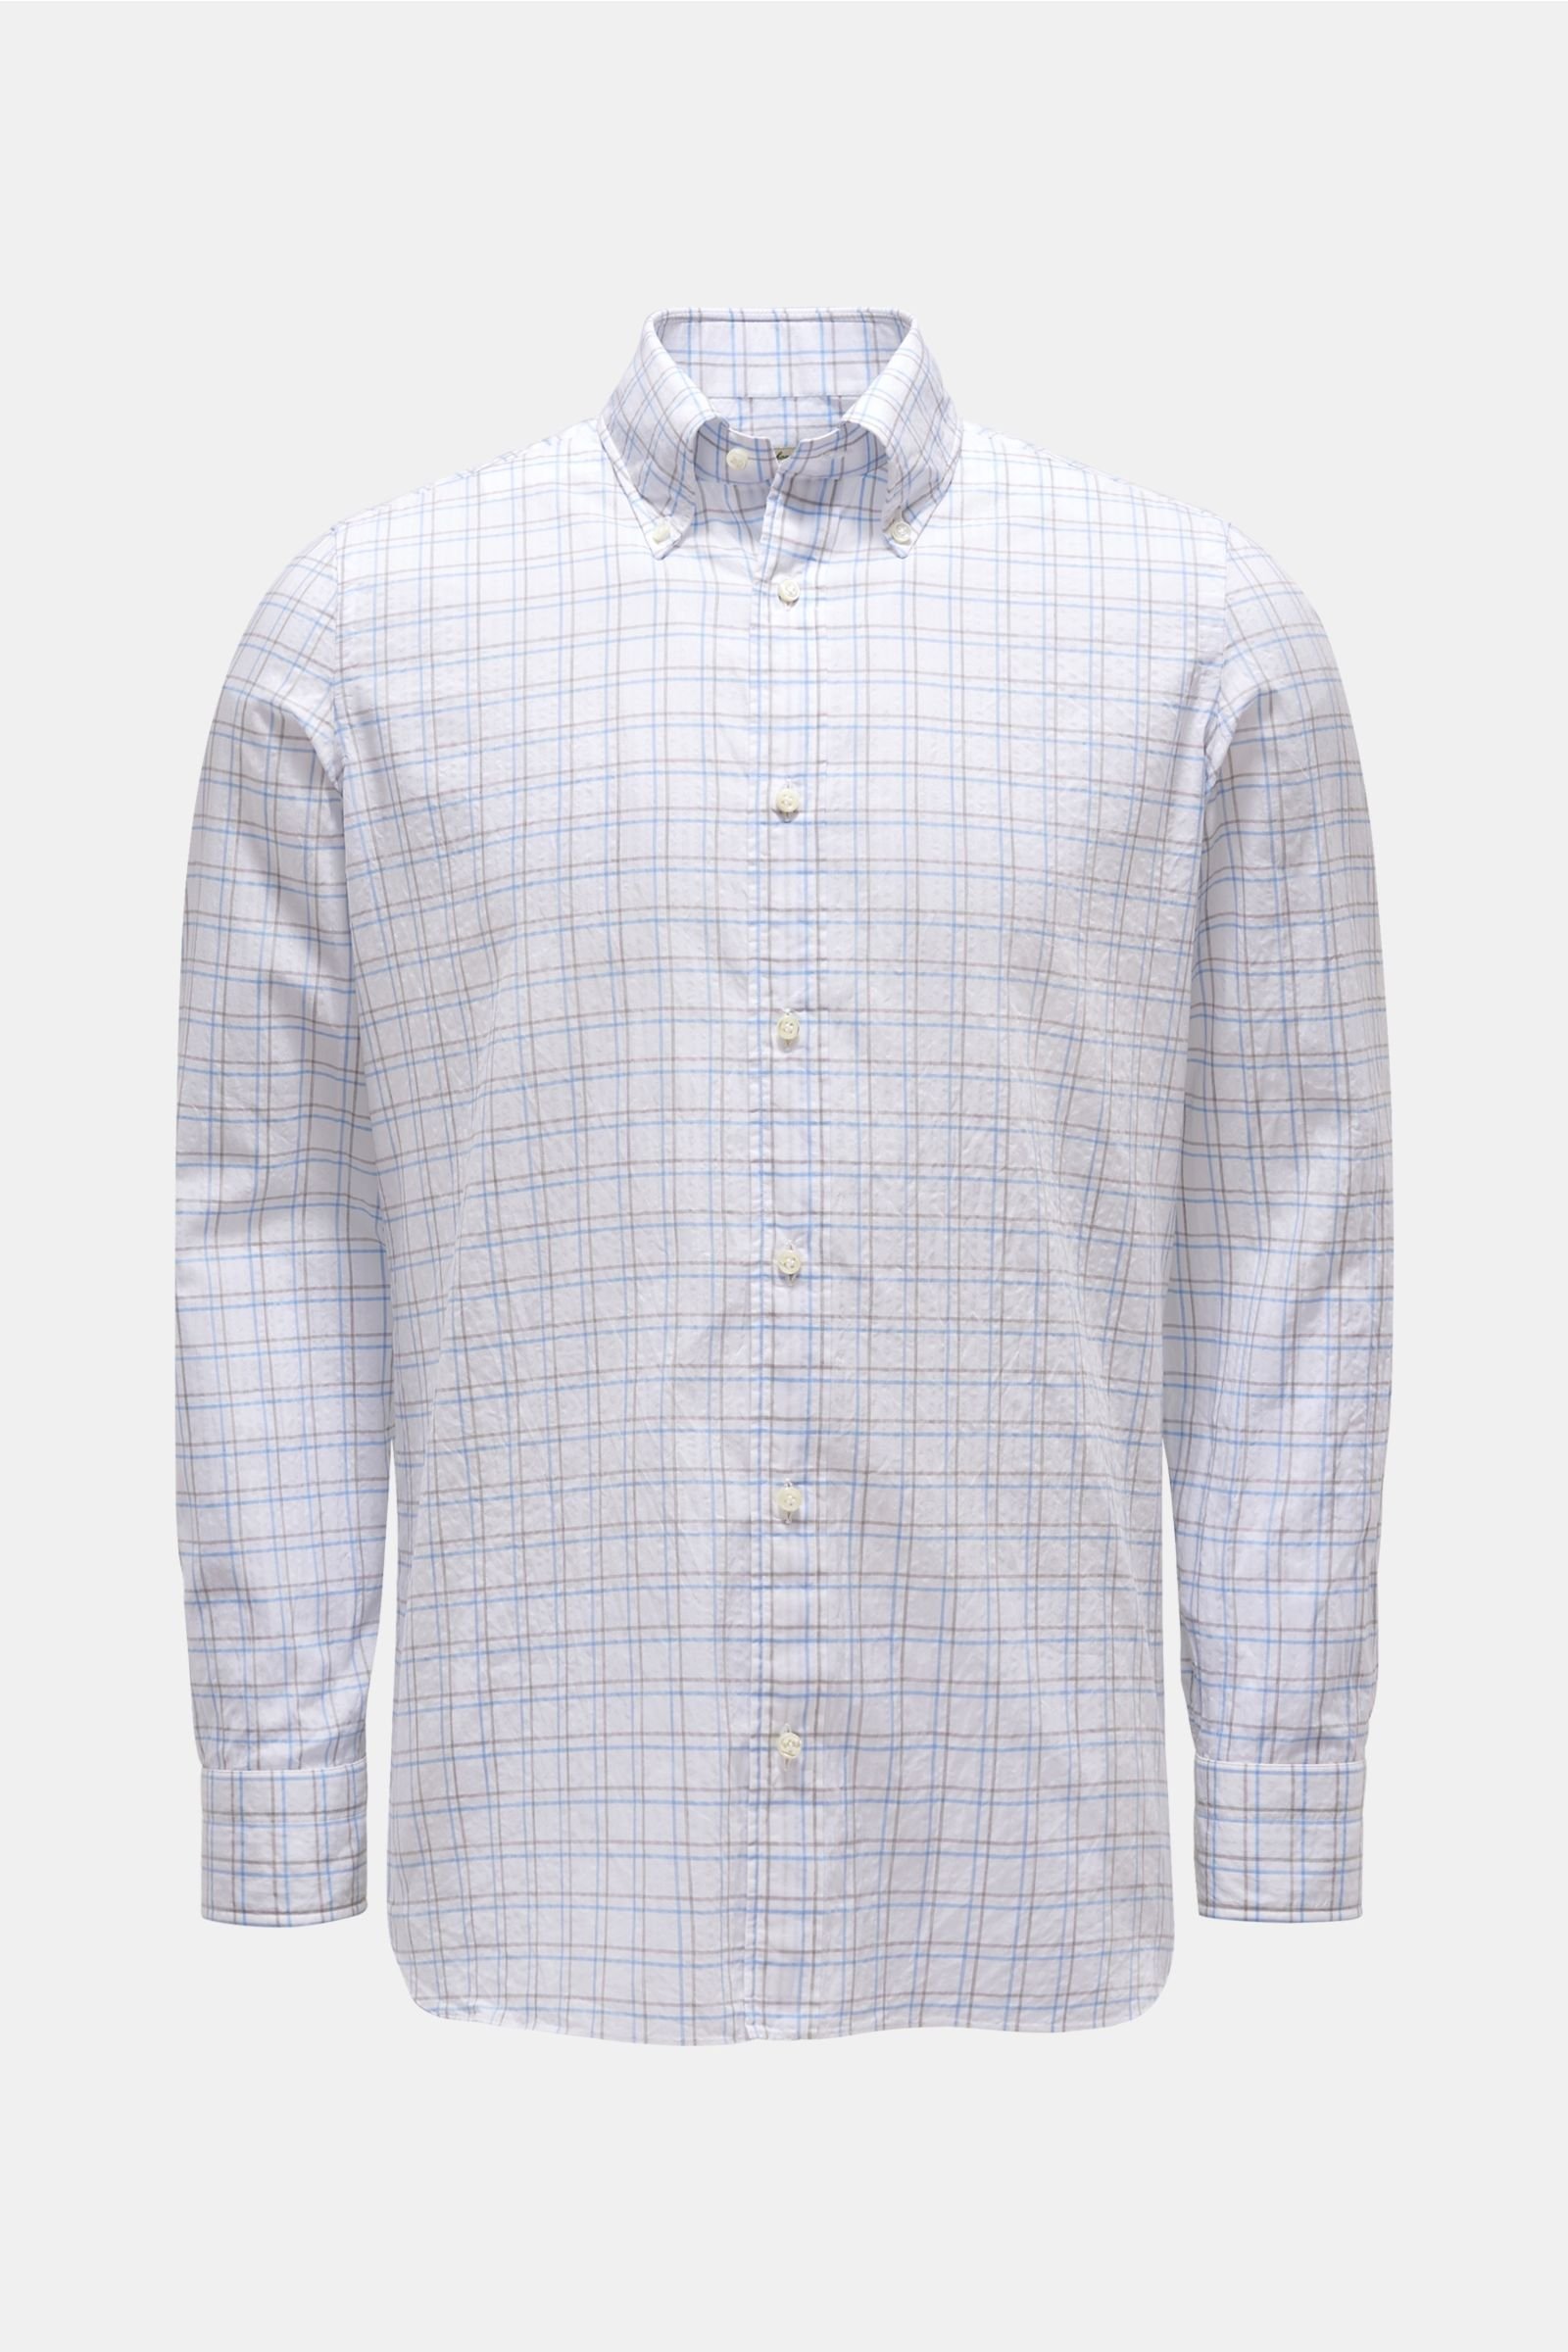 Seersucker shirt button-down collar grey/white checked